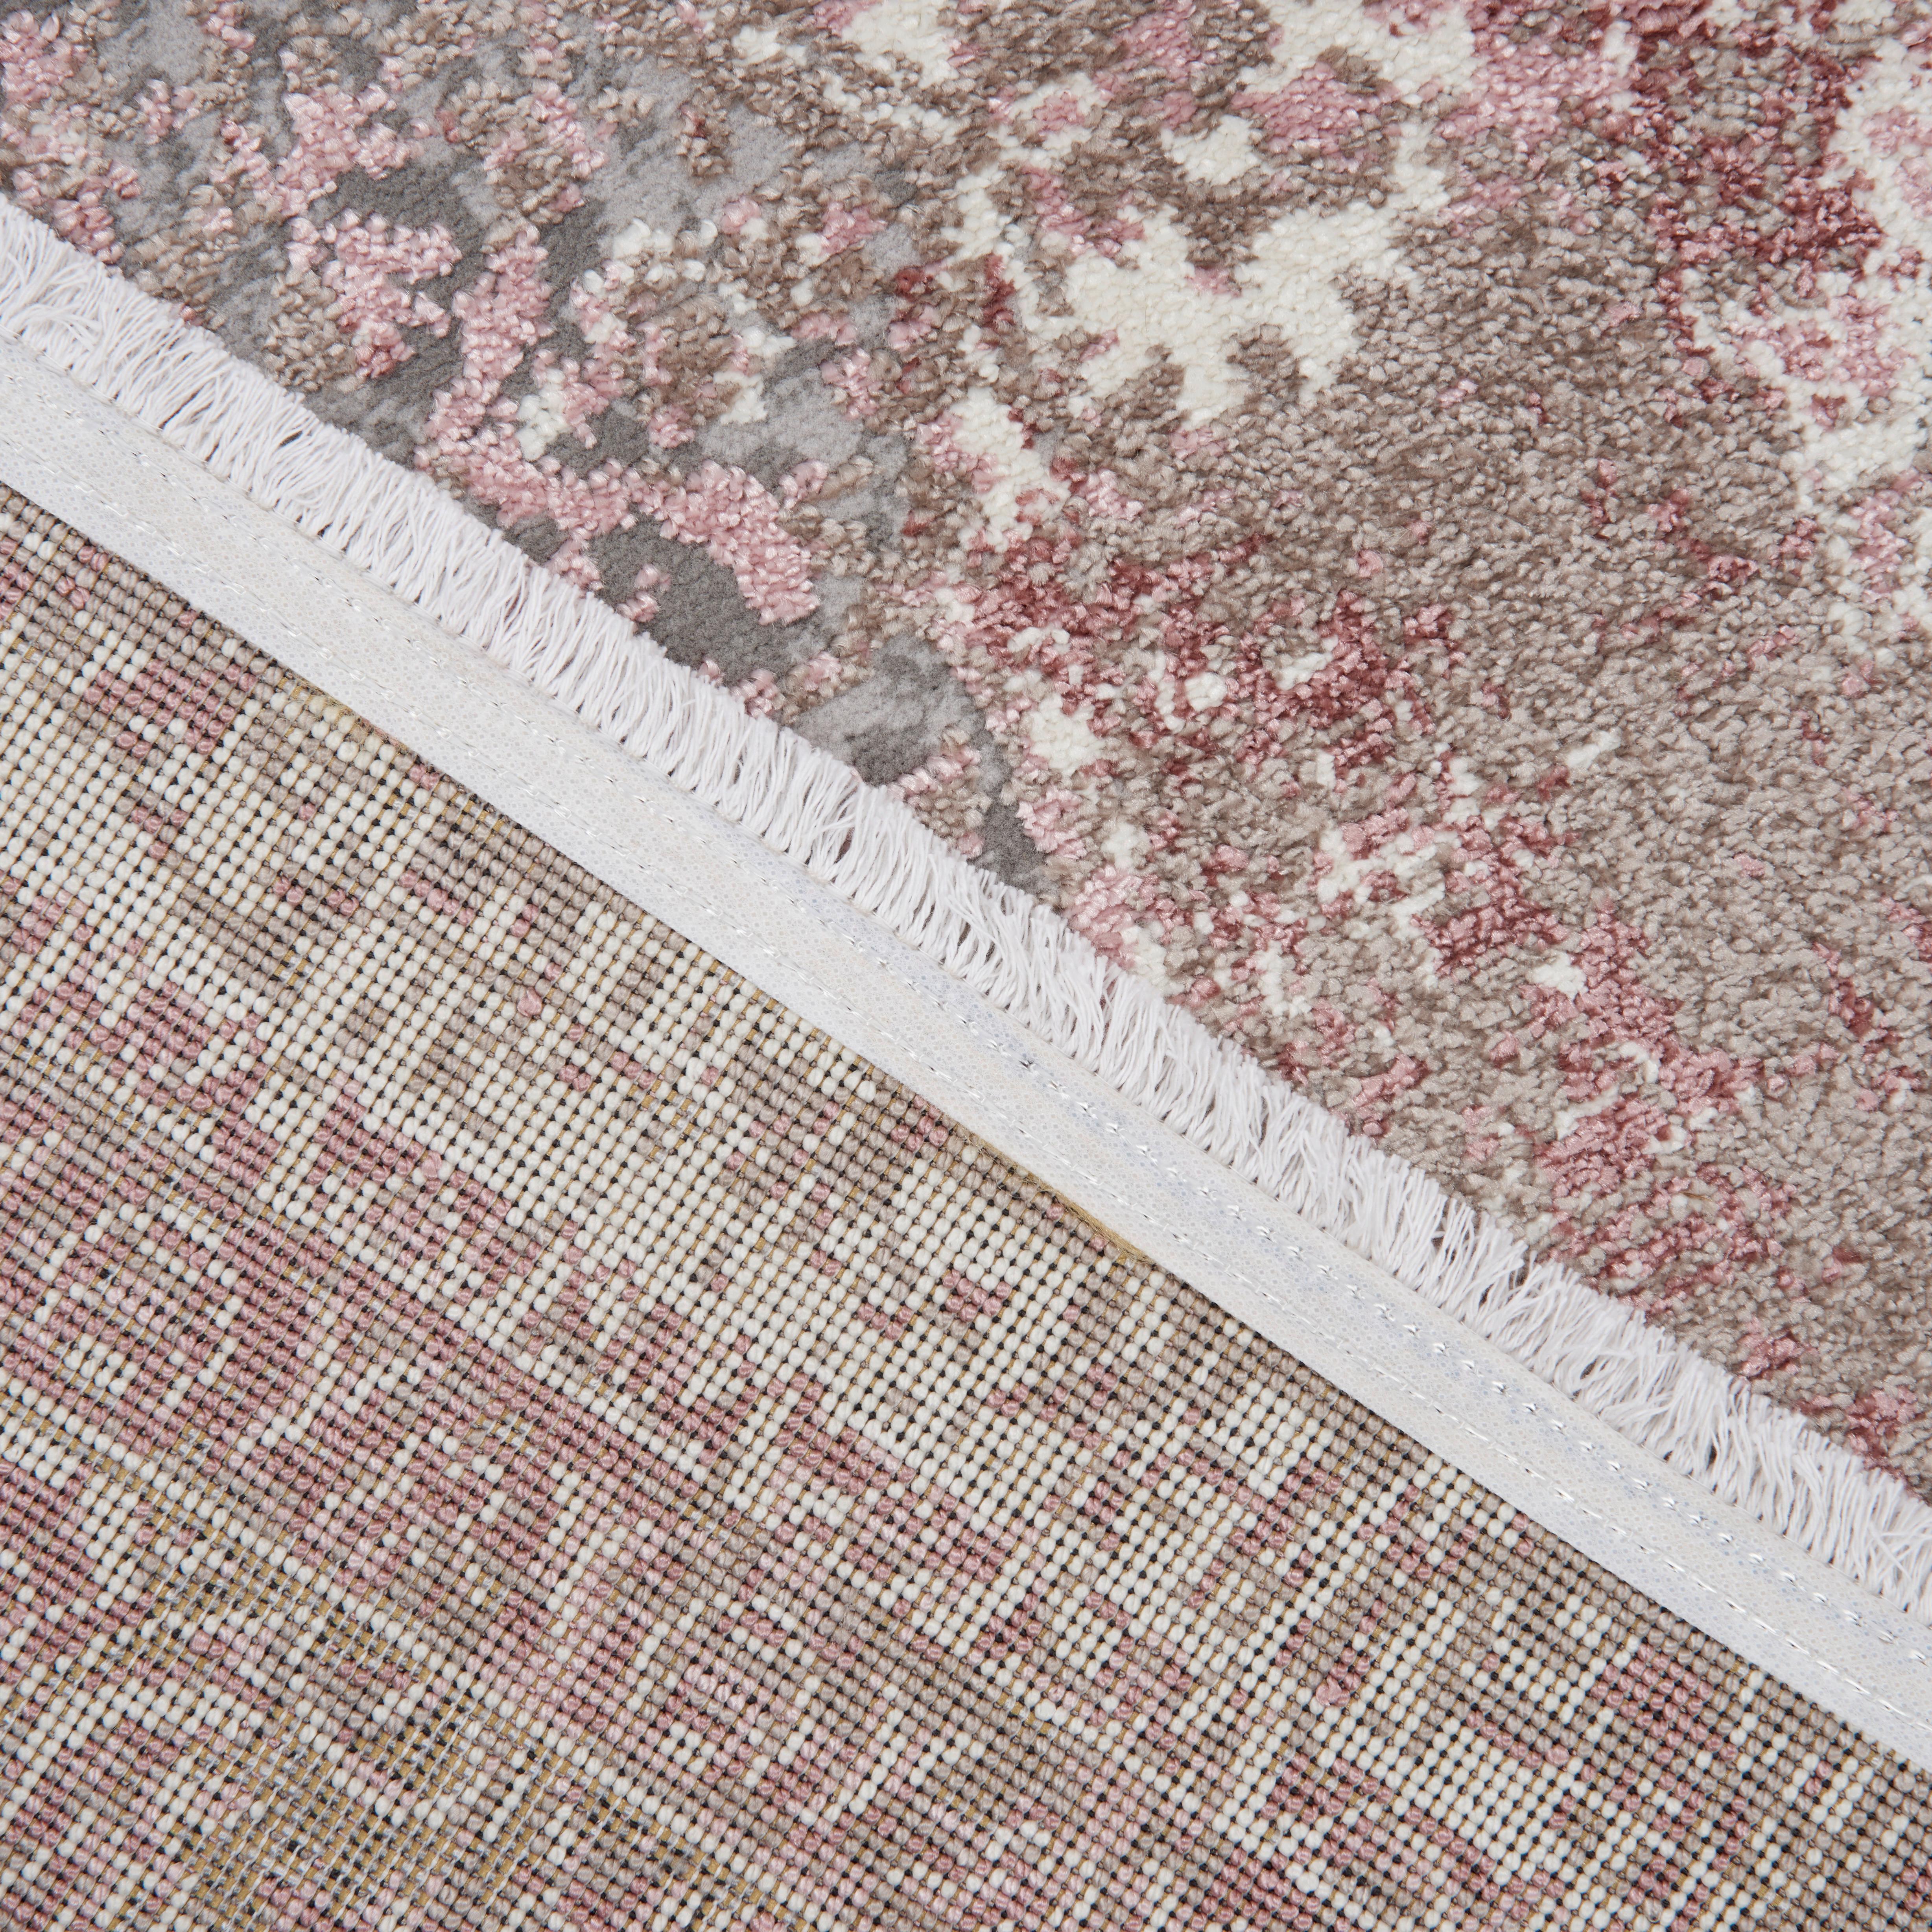 Tkaný Koberec Marcus 3, 160/230cm, Růžová - růžová, textil (160/230cm) - Modern Living